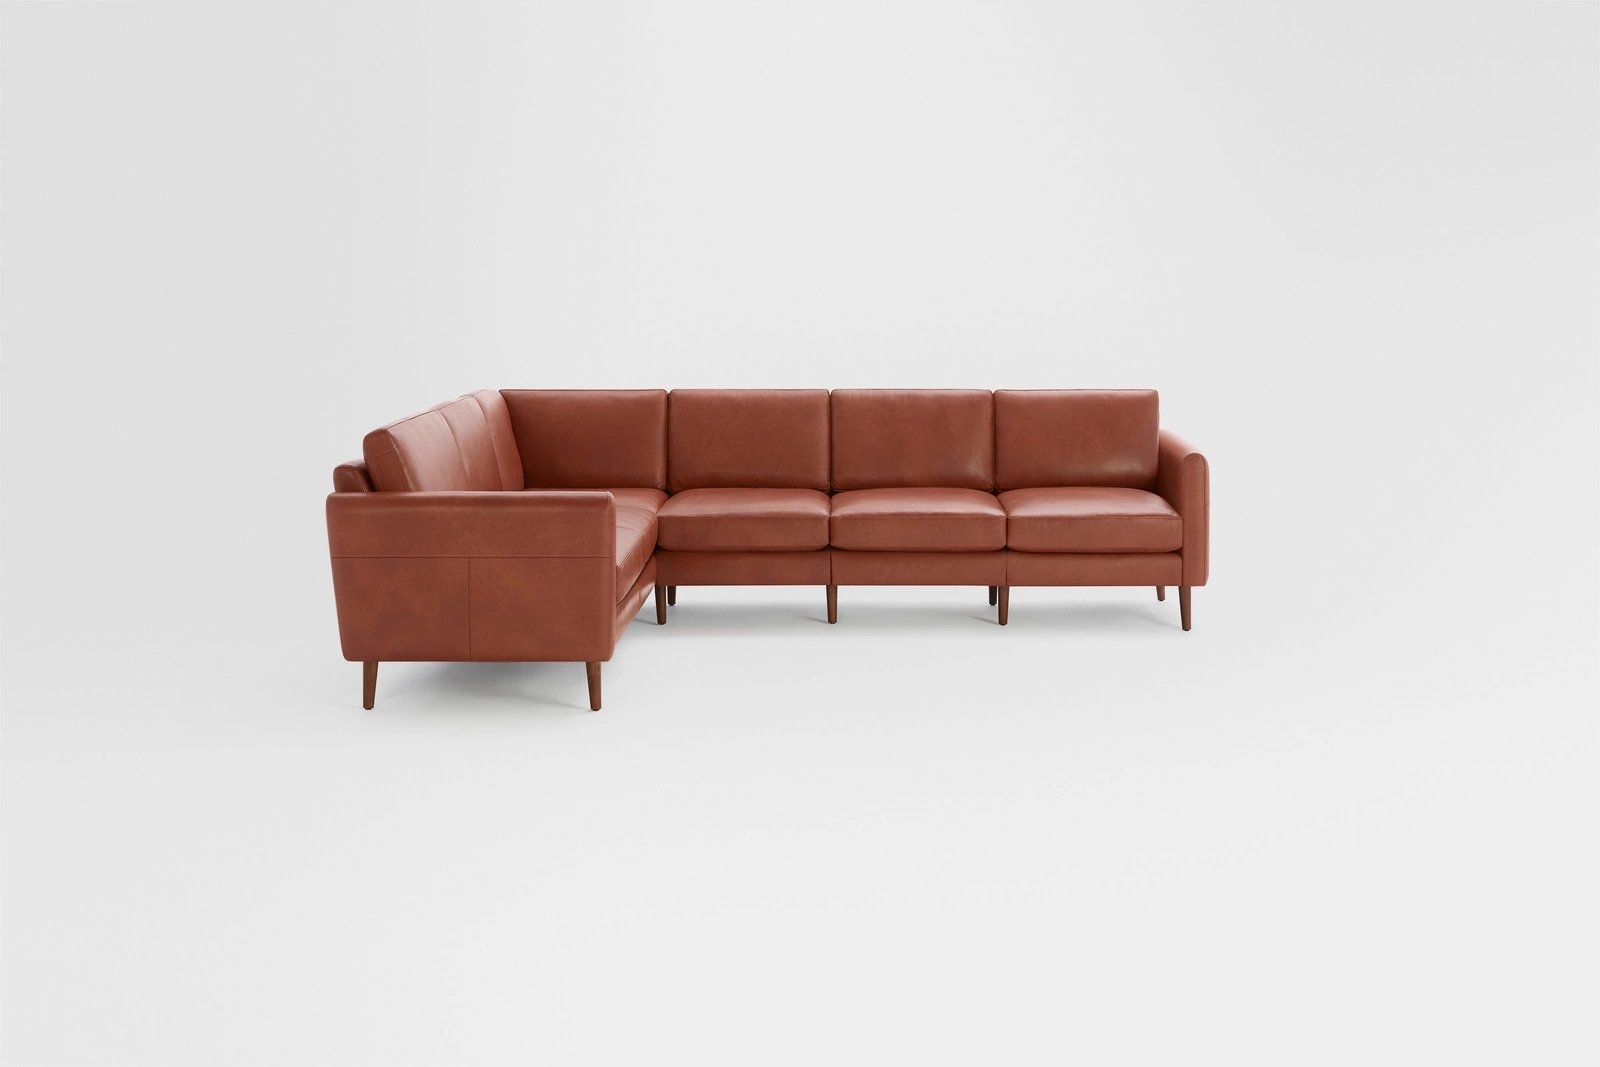 Nomad Leather 6-Seat Corner Sectional // Chestnut-Walnut - Image 1